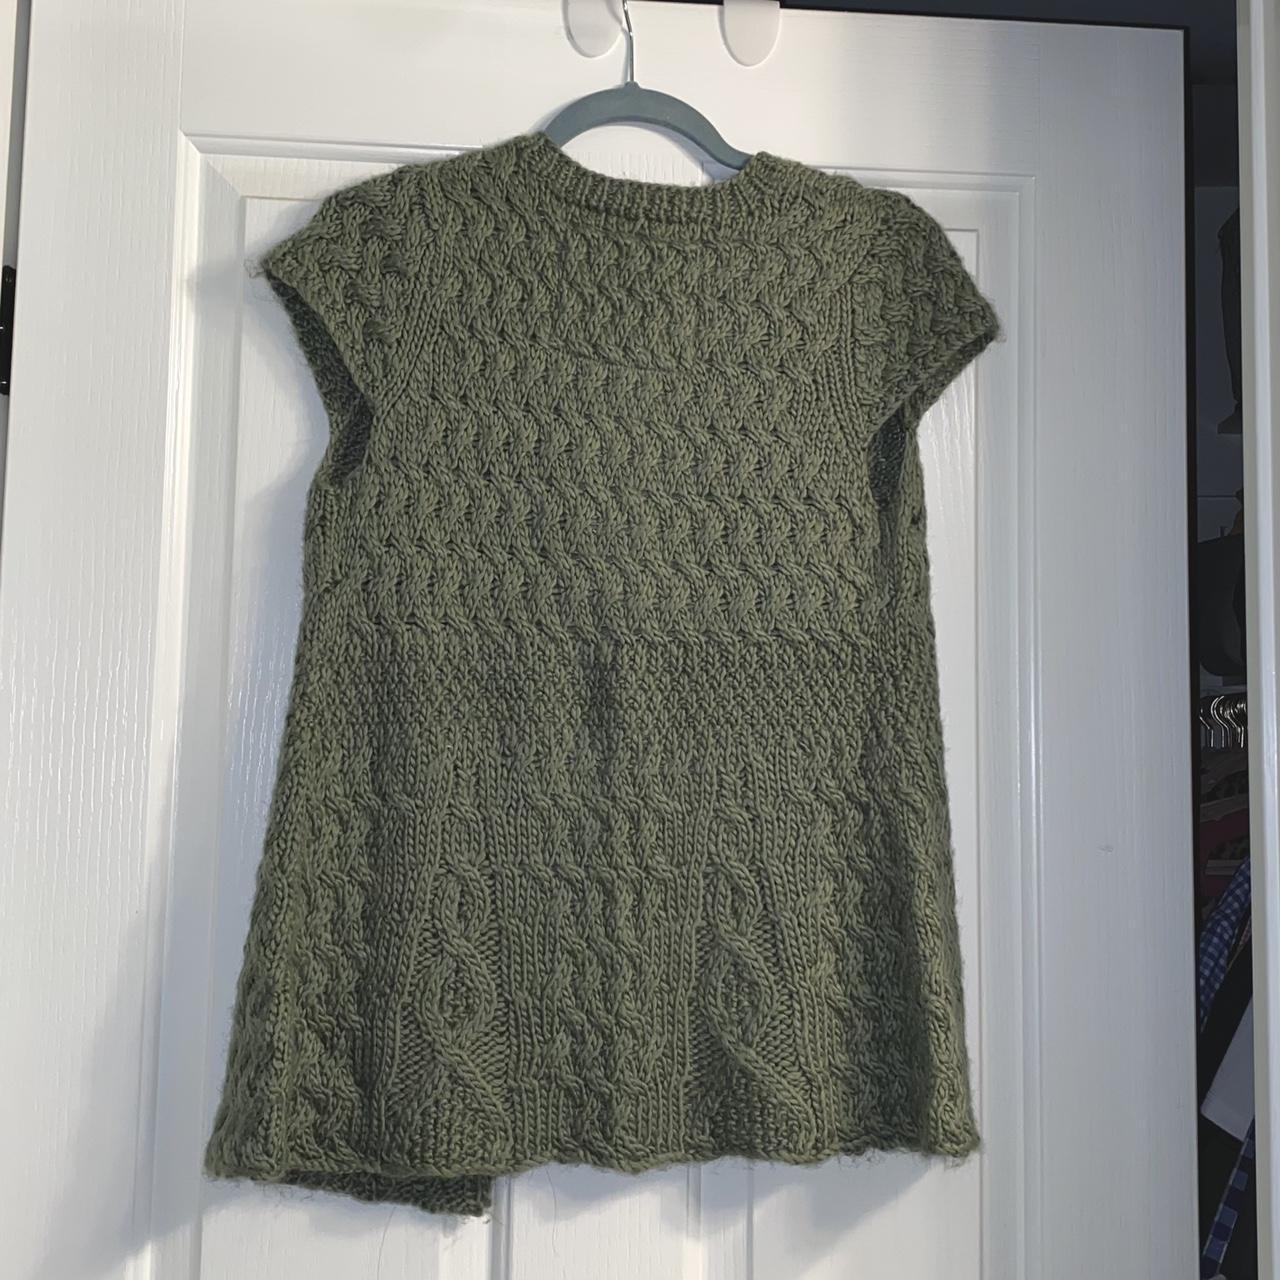 Product Image 4 - kenji knit babydoll sweater 🐸

-size